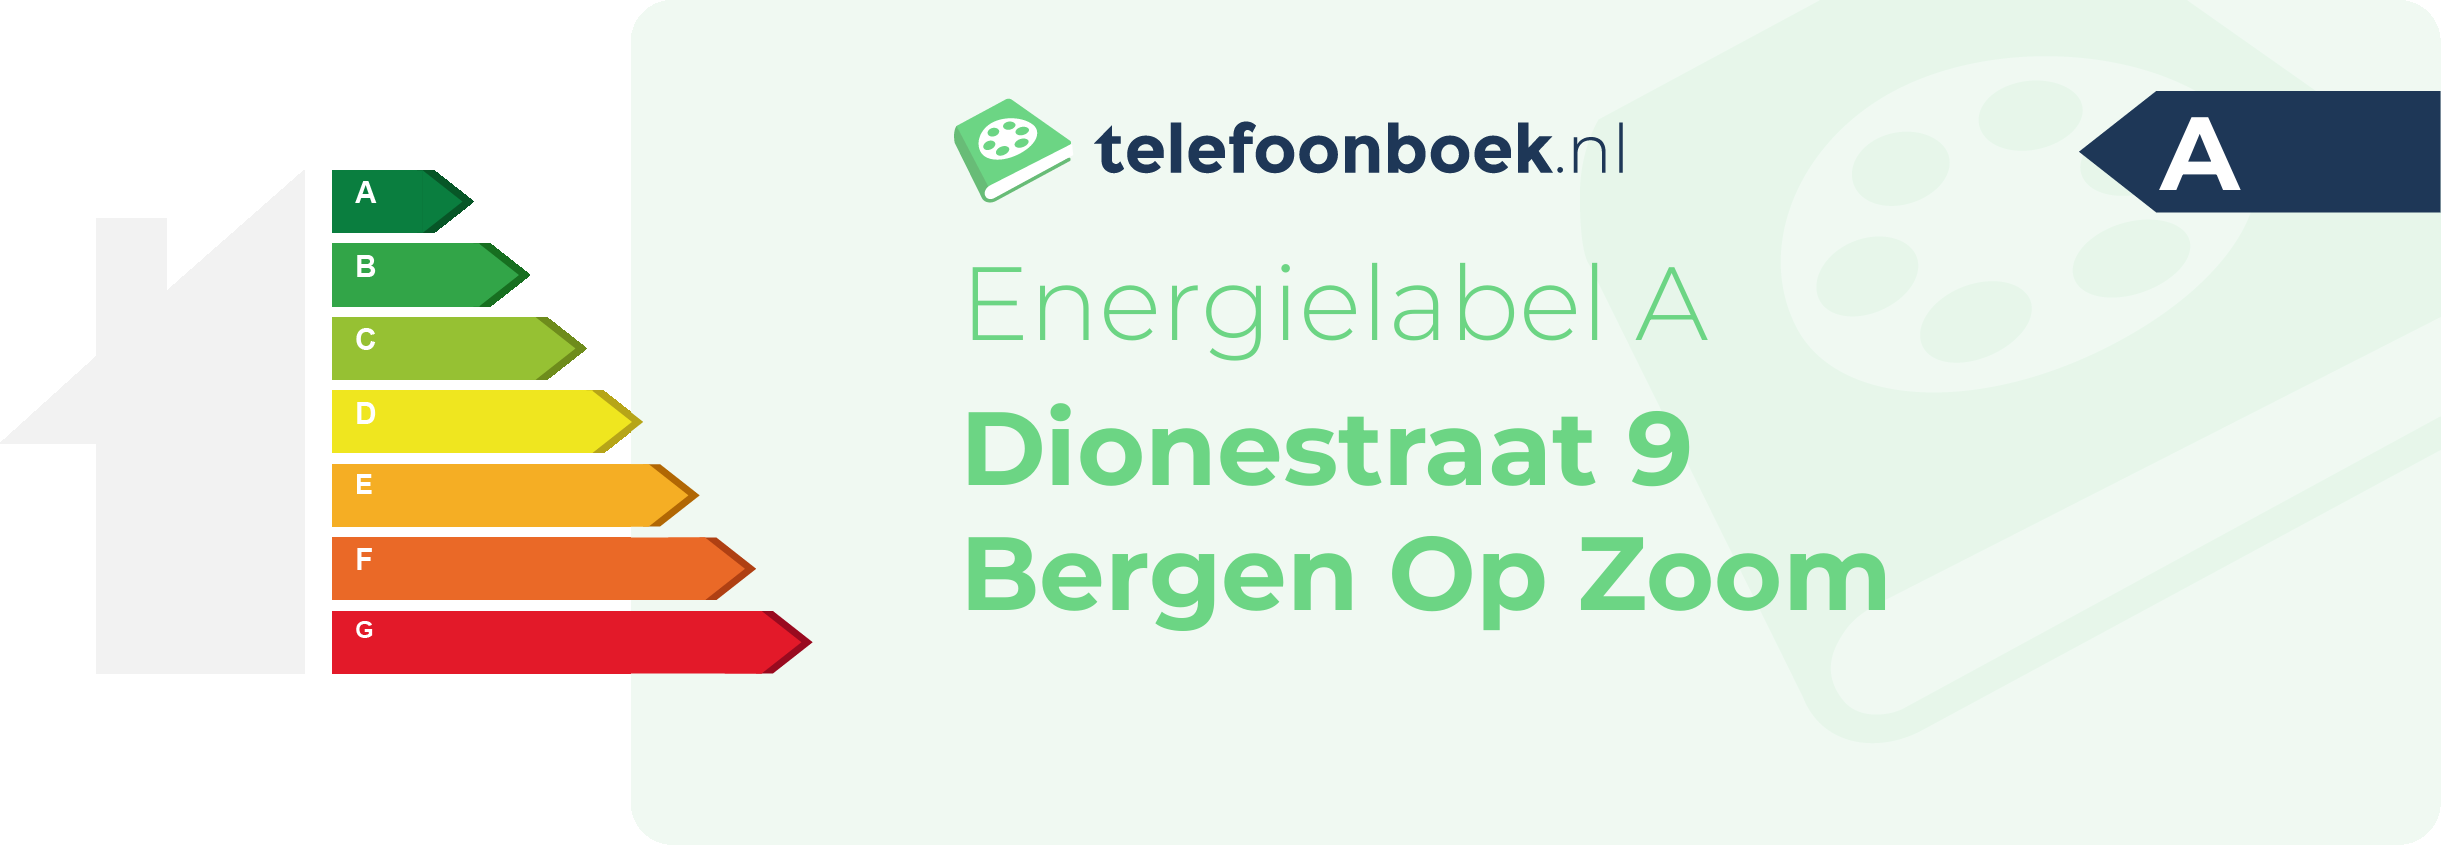 Energielabel Dionestraat 9 Bergen Op Zoom